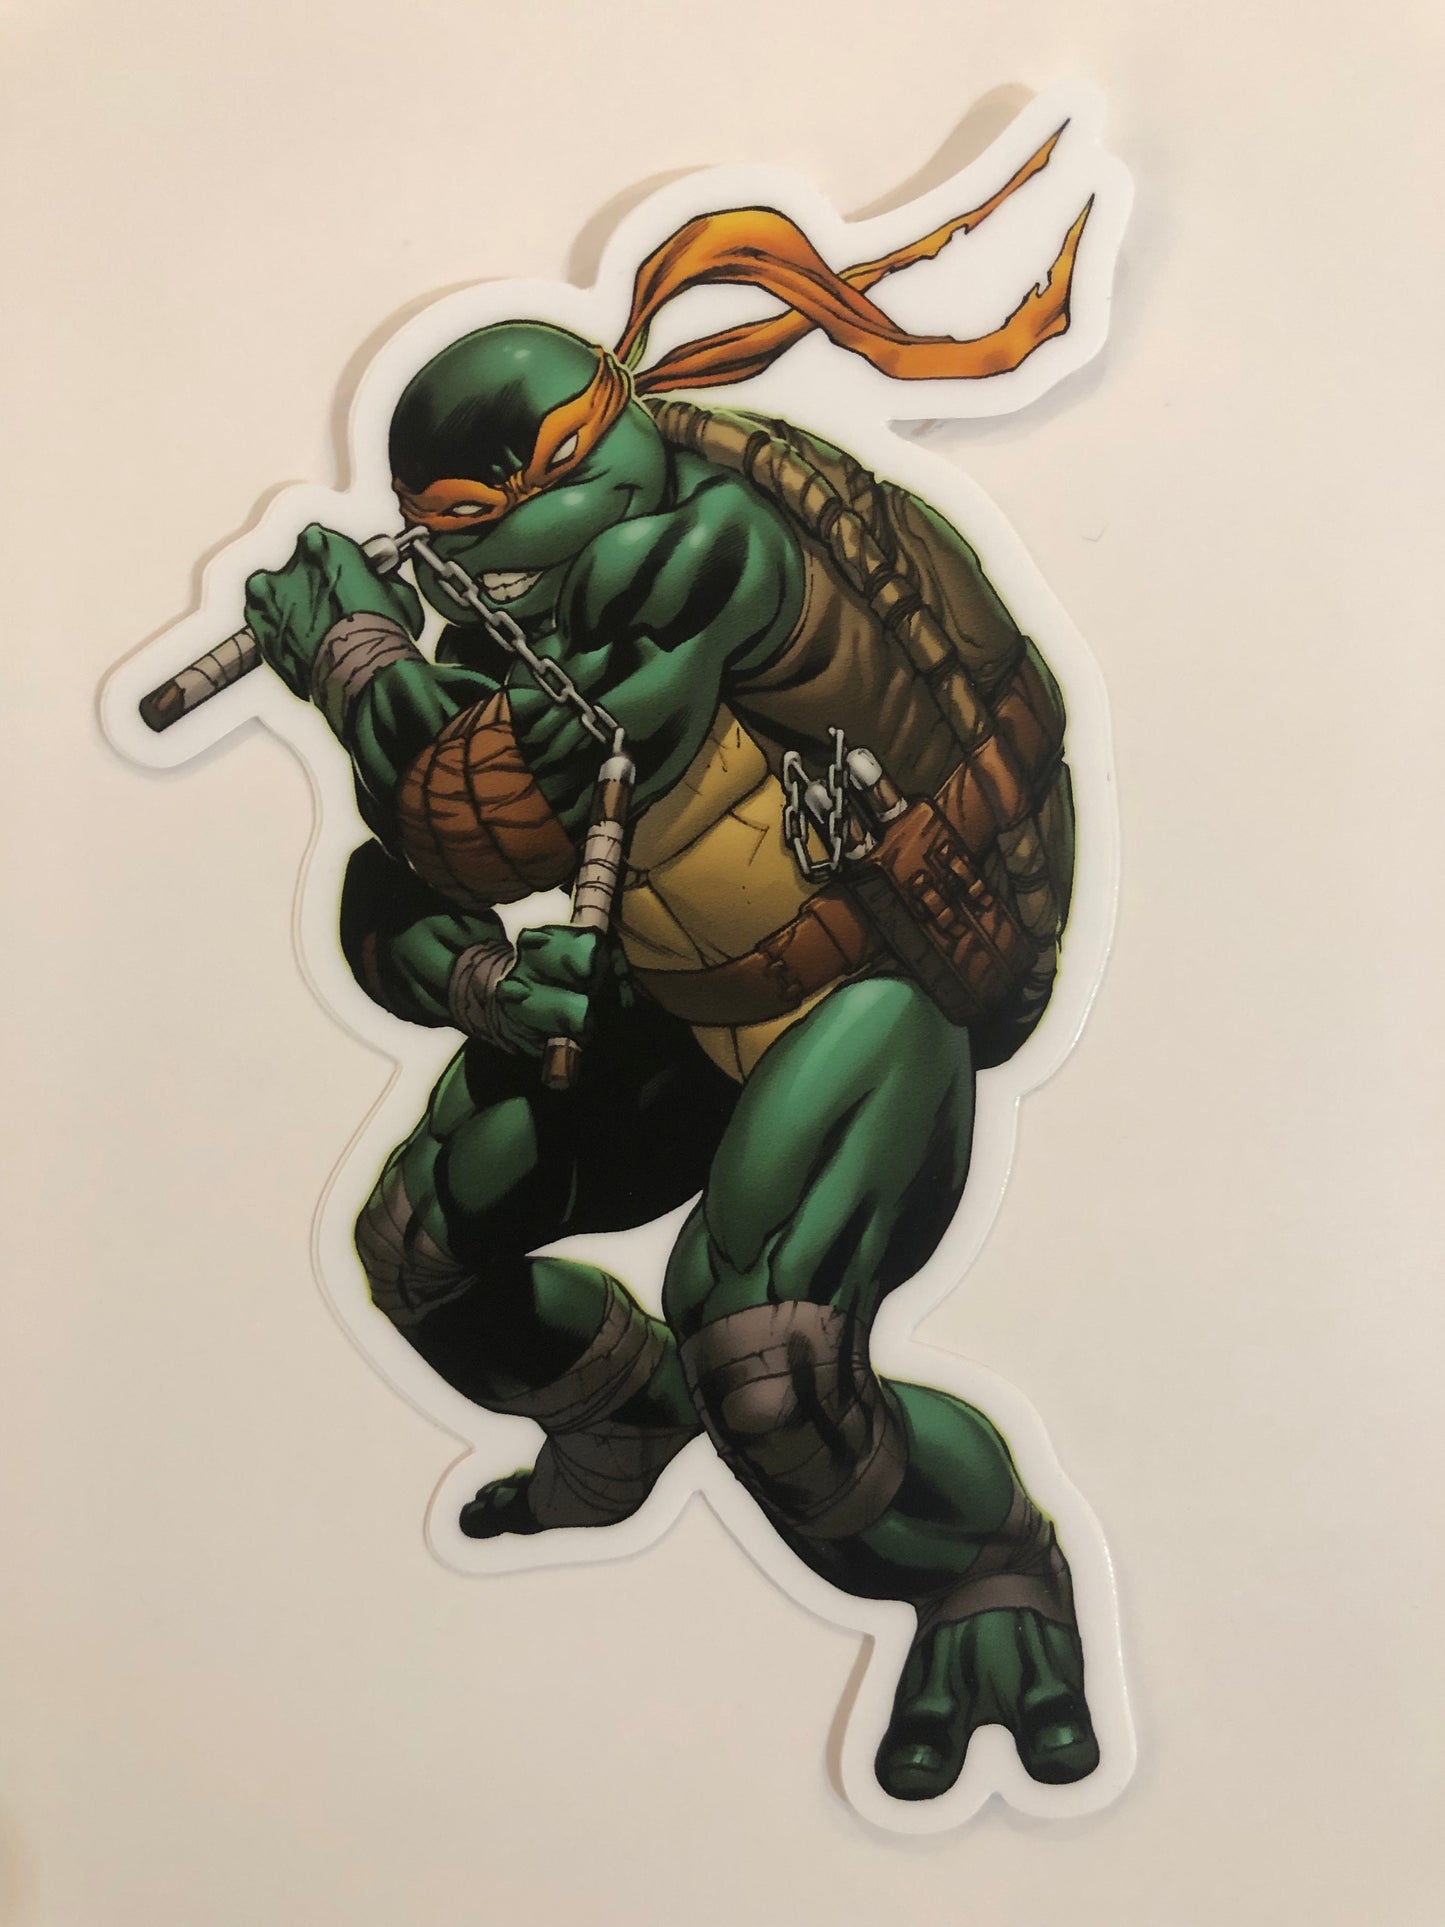 Teenage Mutant Ninja Turtles Sticker